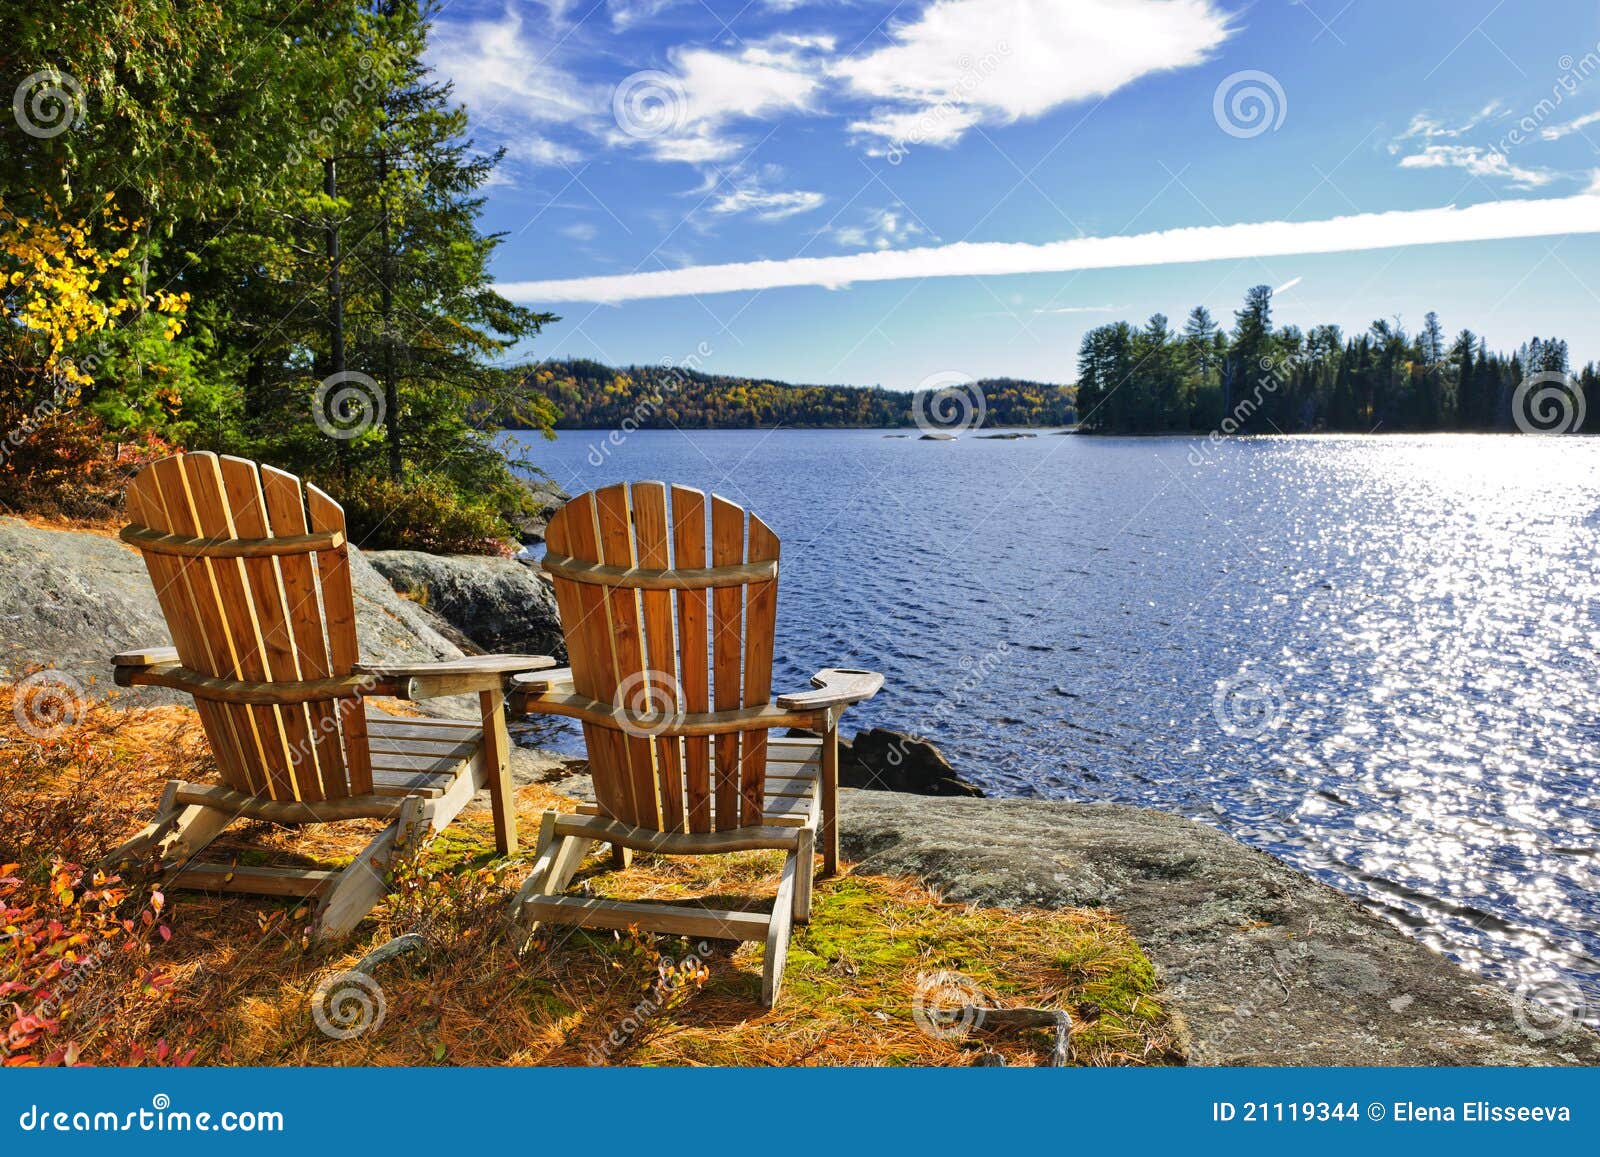 Adirondack Chairs At Lake Shore Stock Images - Image: 21119344